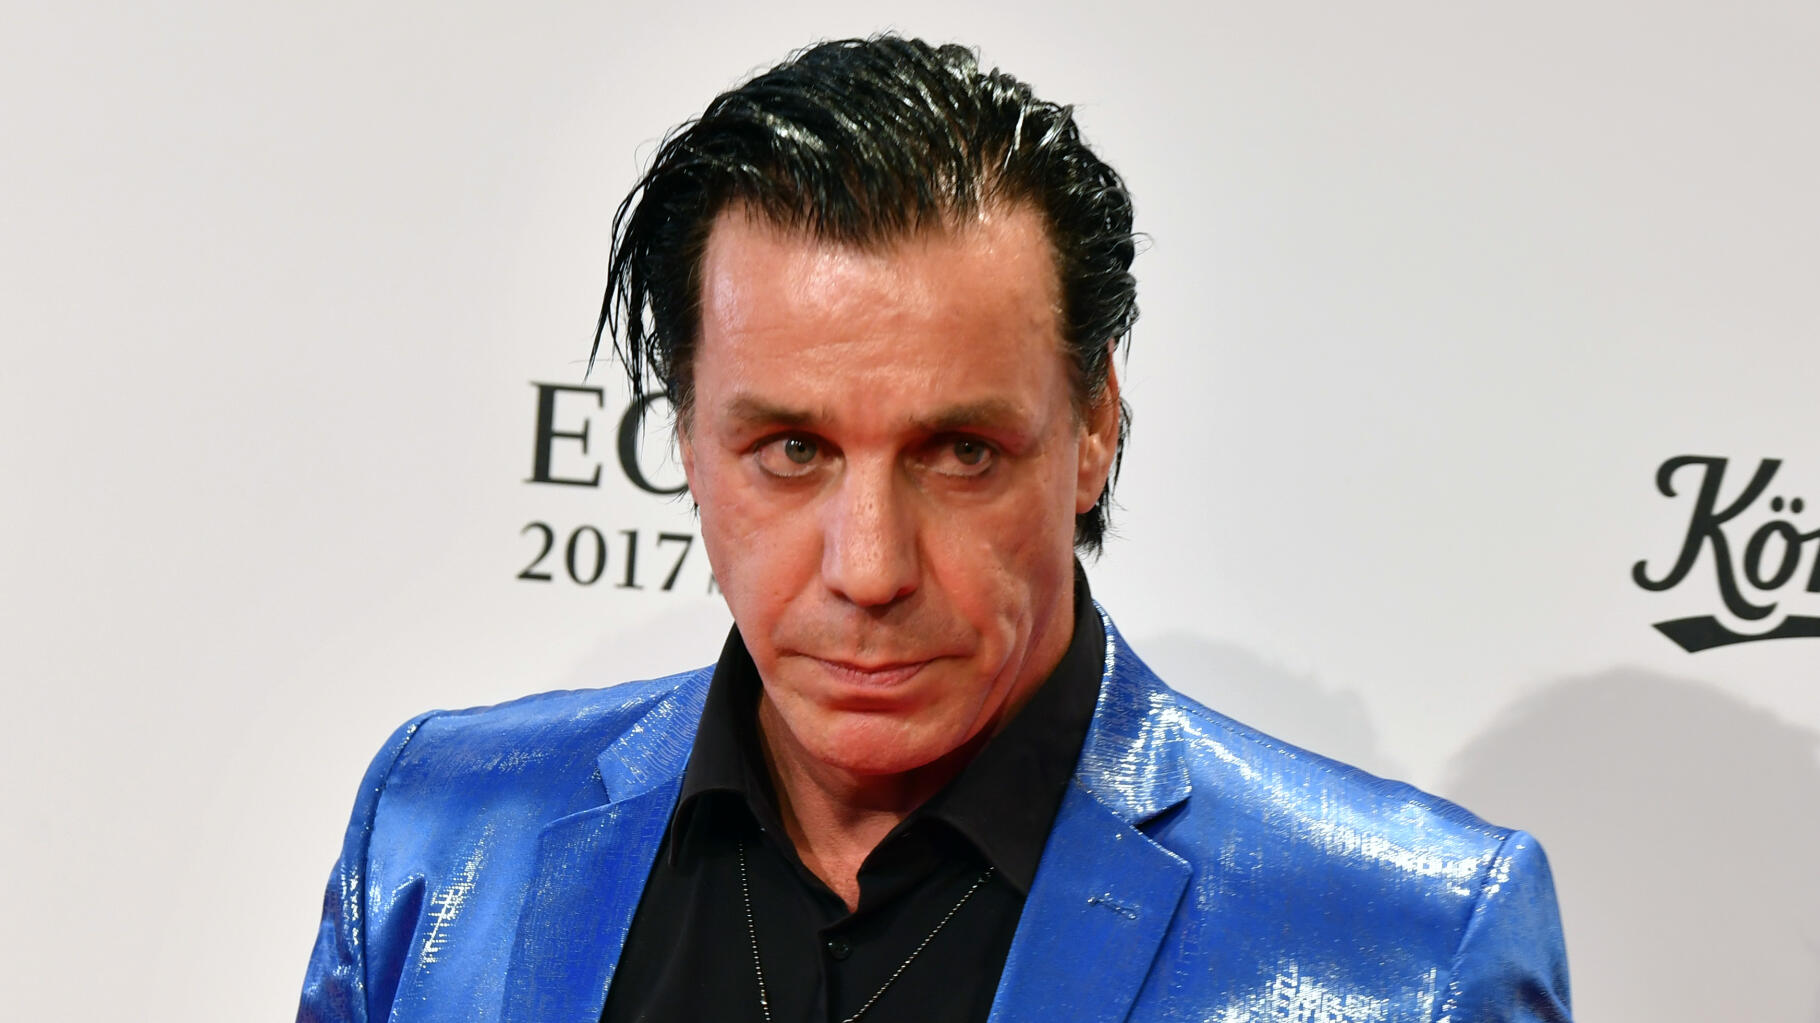 Le chanteur de Rammstein, Even Lindemann, nie avec véhémence les allégations d’agression sexuelle